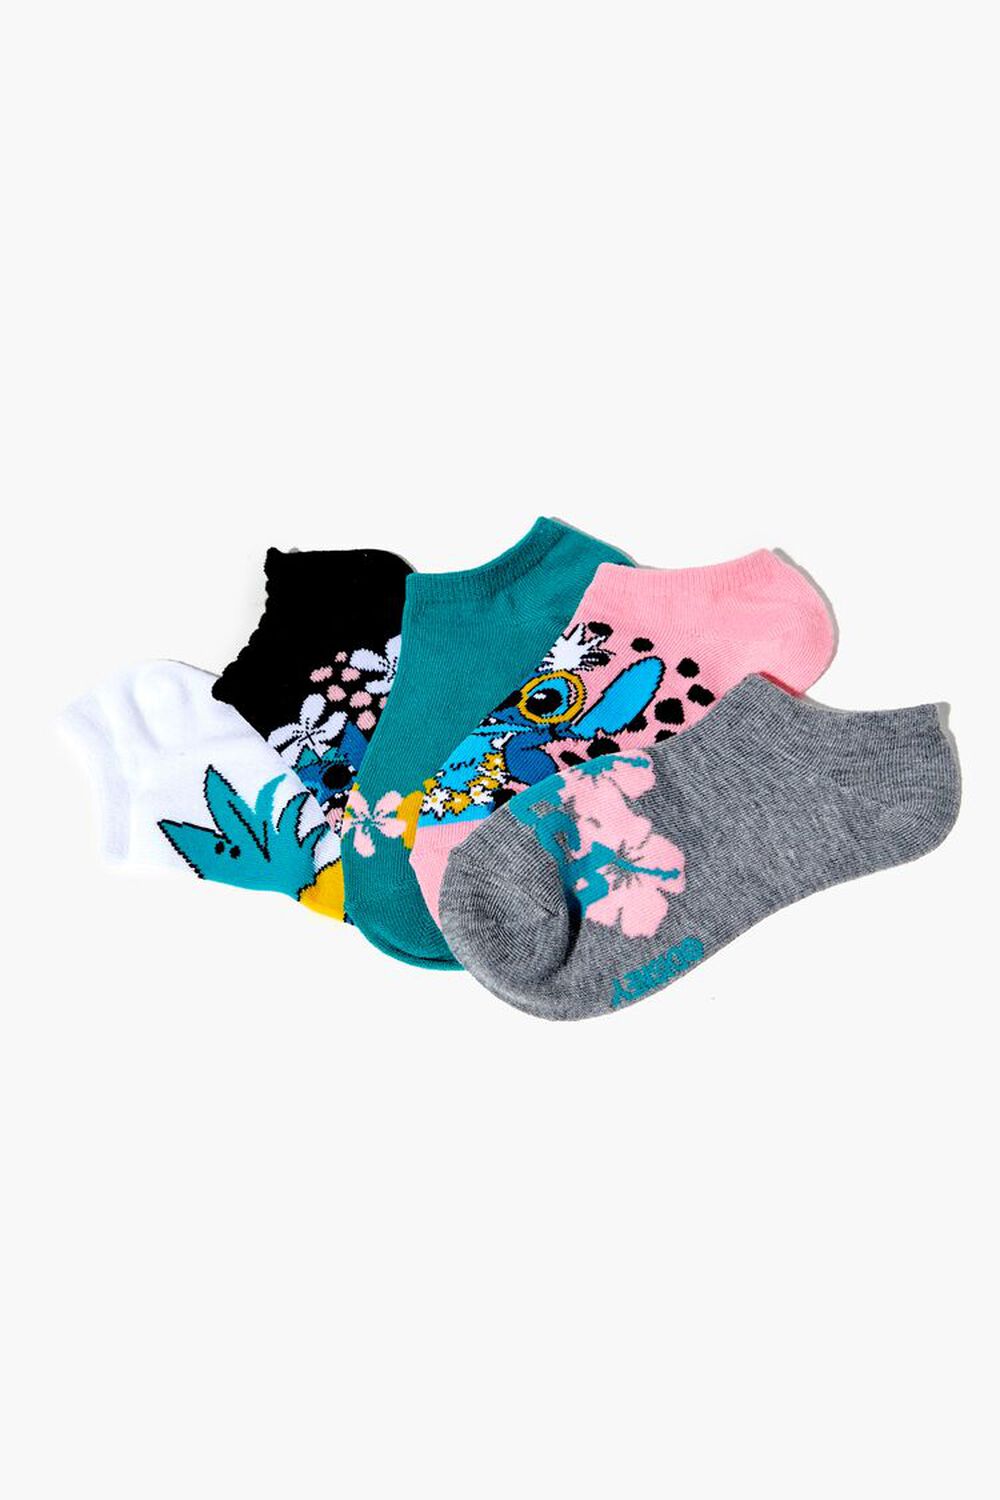 Kids Lilo & Stitch Ankle Sock Set - 5 Pack (Girls + Boys), image 1